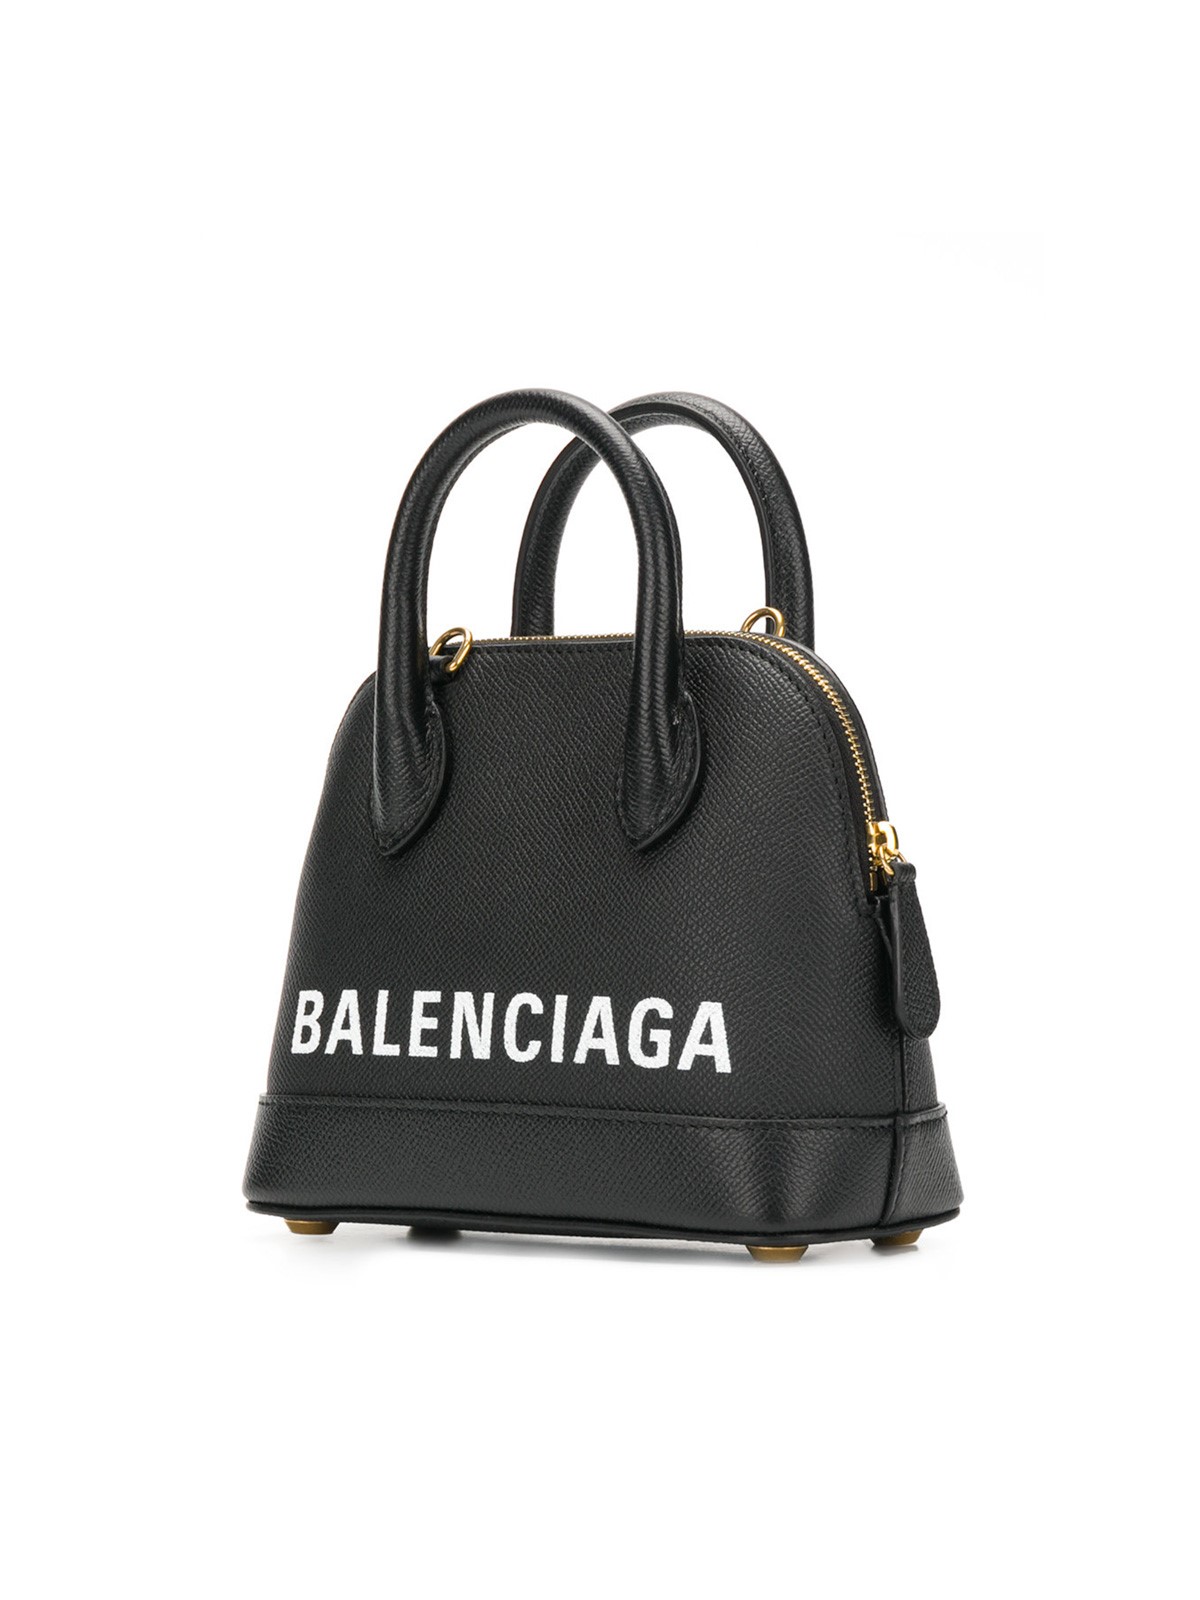 balenciaga XXS TOTE VILLE BAG available on montiboutique.com - 22912